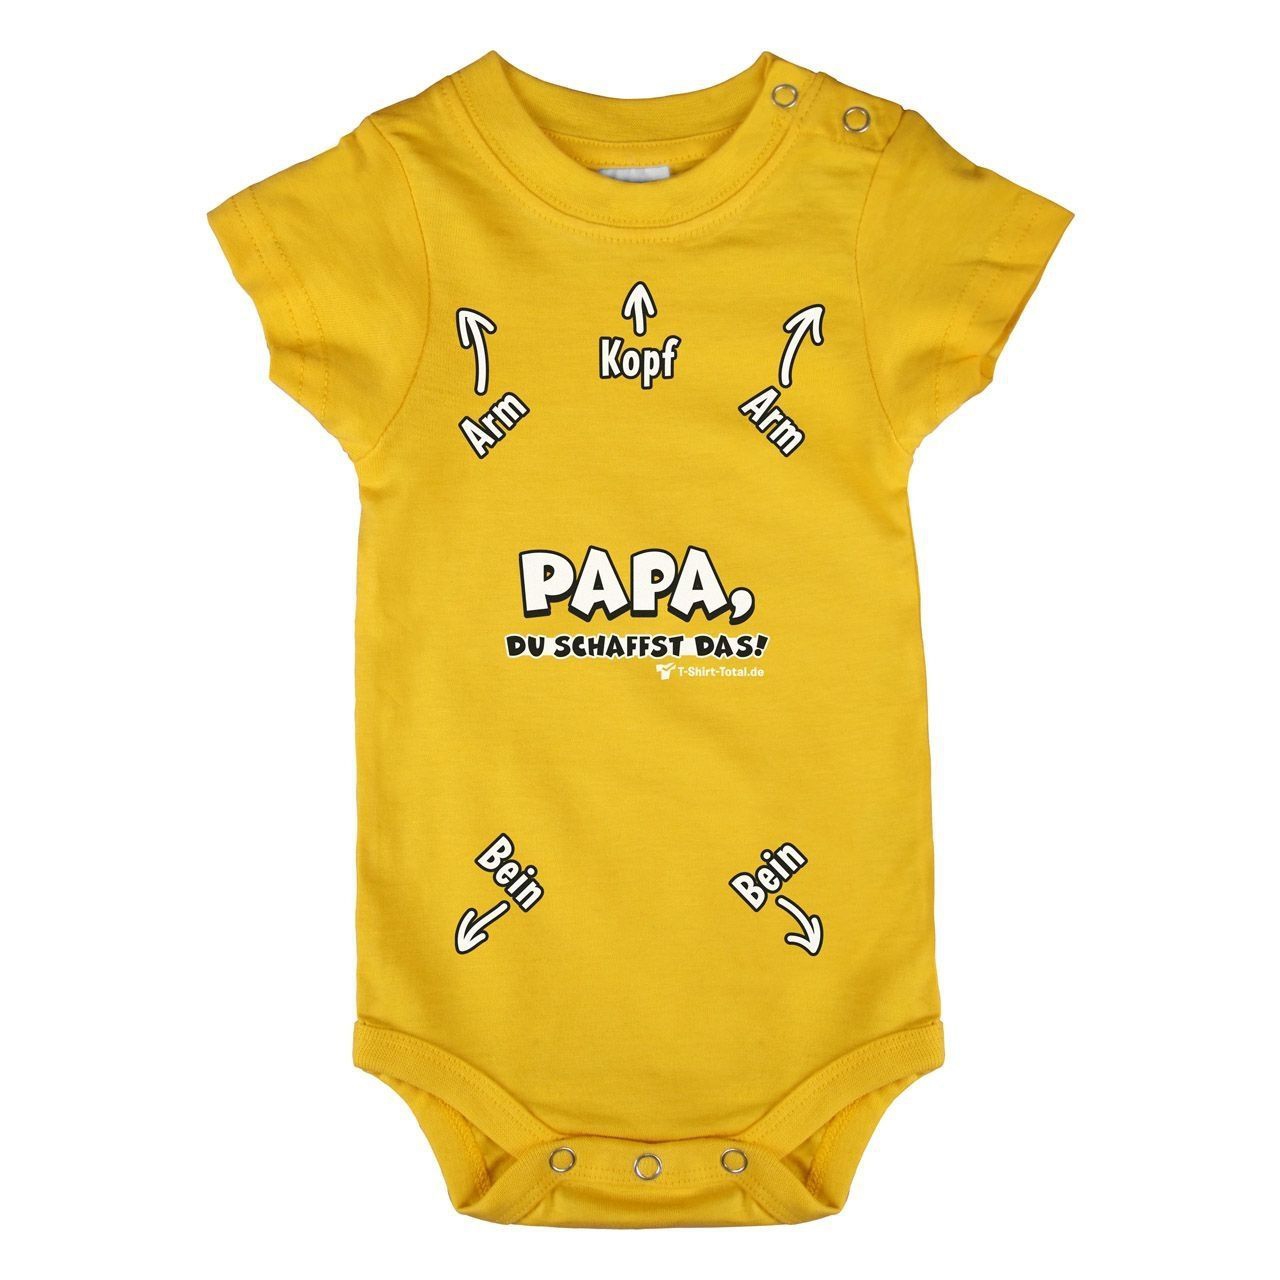 Papa du schaffst das Baby Body Kurzarm gelb 68 / 74